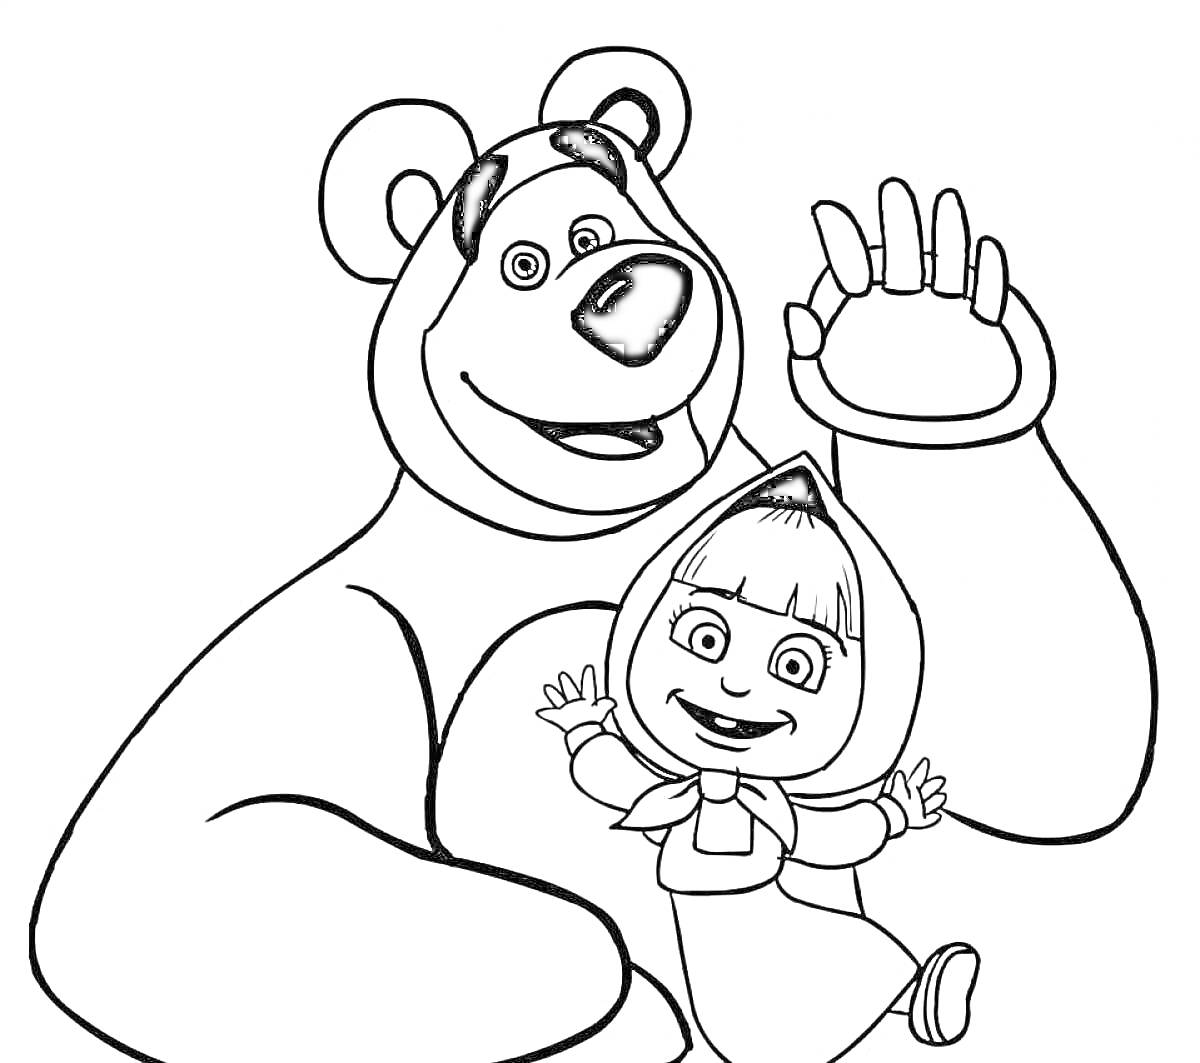 Раскраска Медведь и девочка в платке, девочка сидит на руке медведя и улыбается, медведь машет рукой